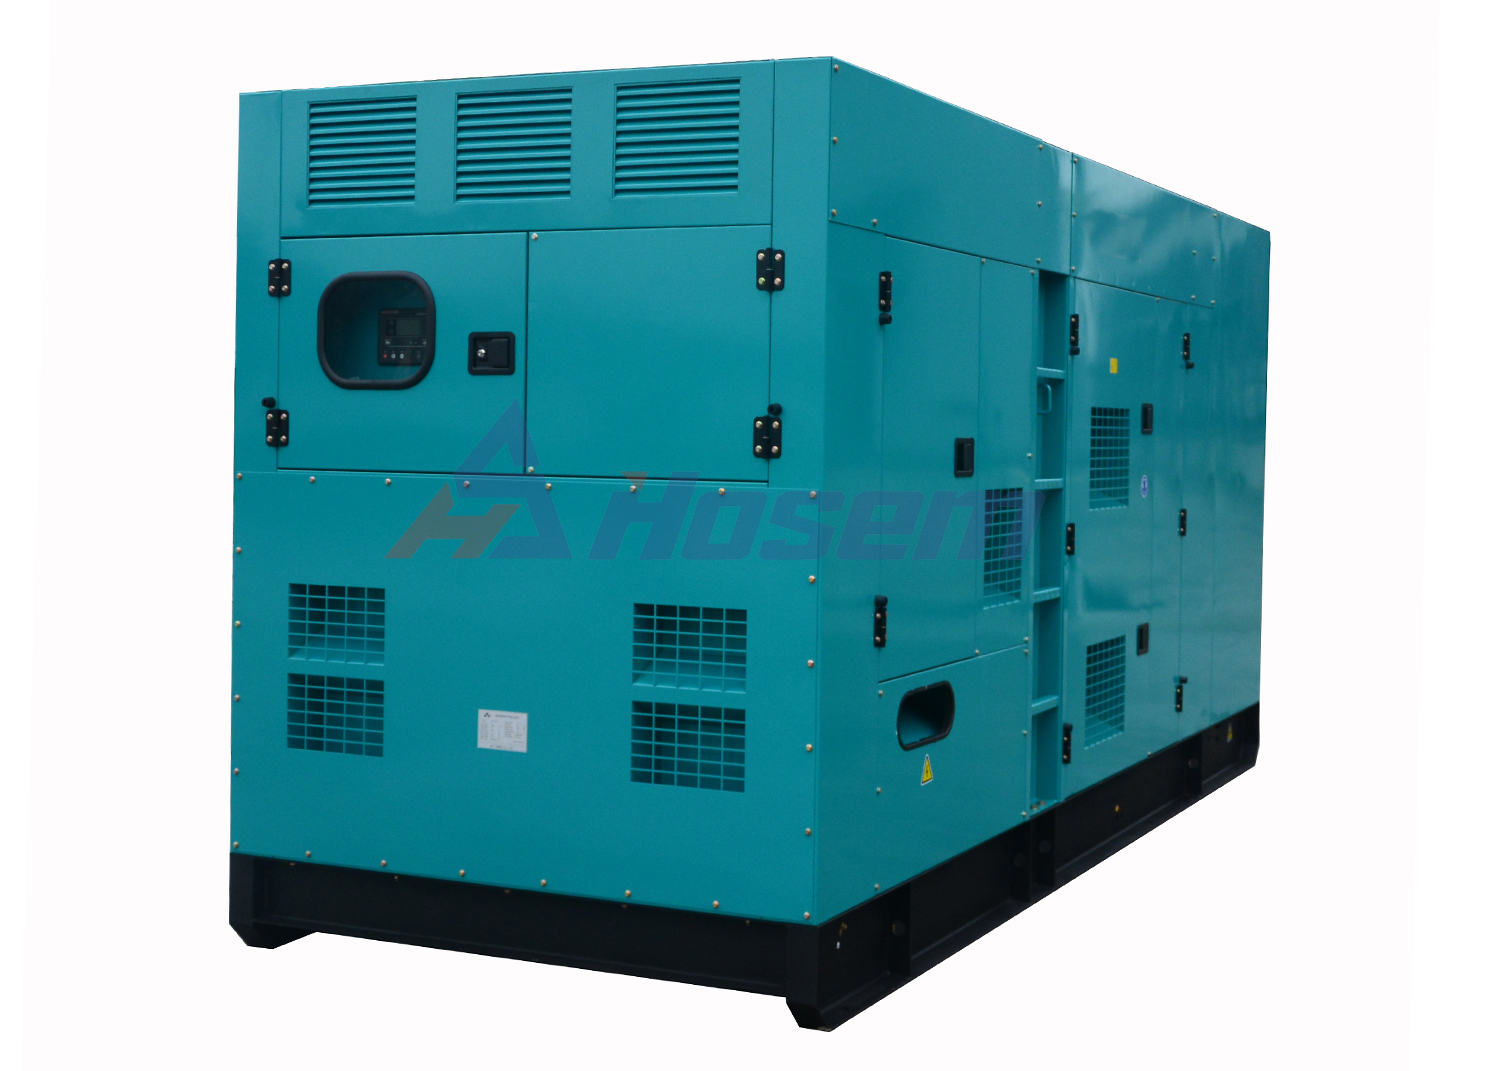 Industrial Generator Set 700kVA Powered by Vman Diesel Engine Model 